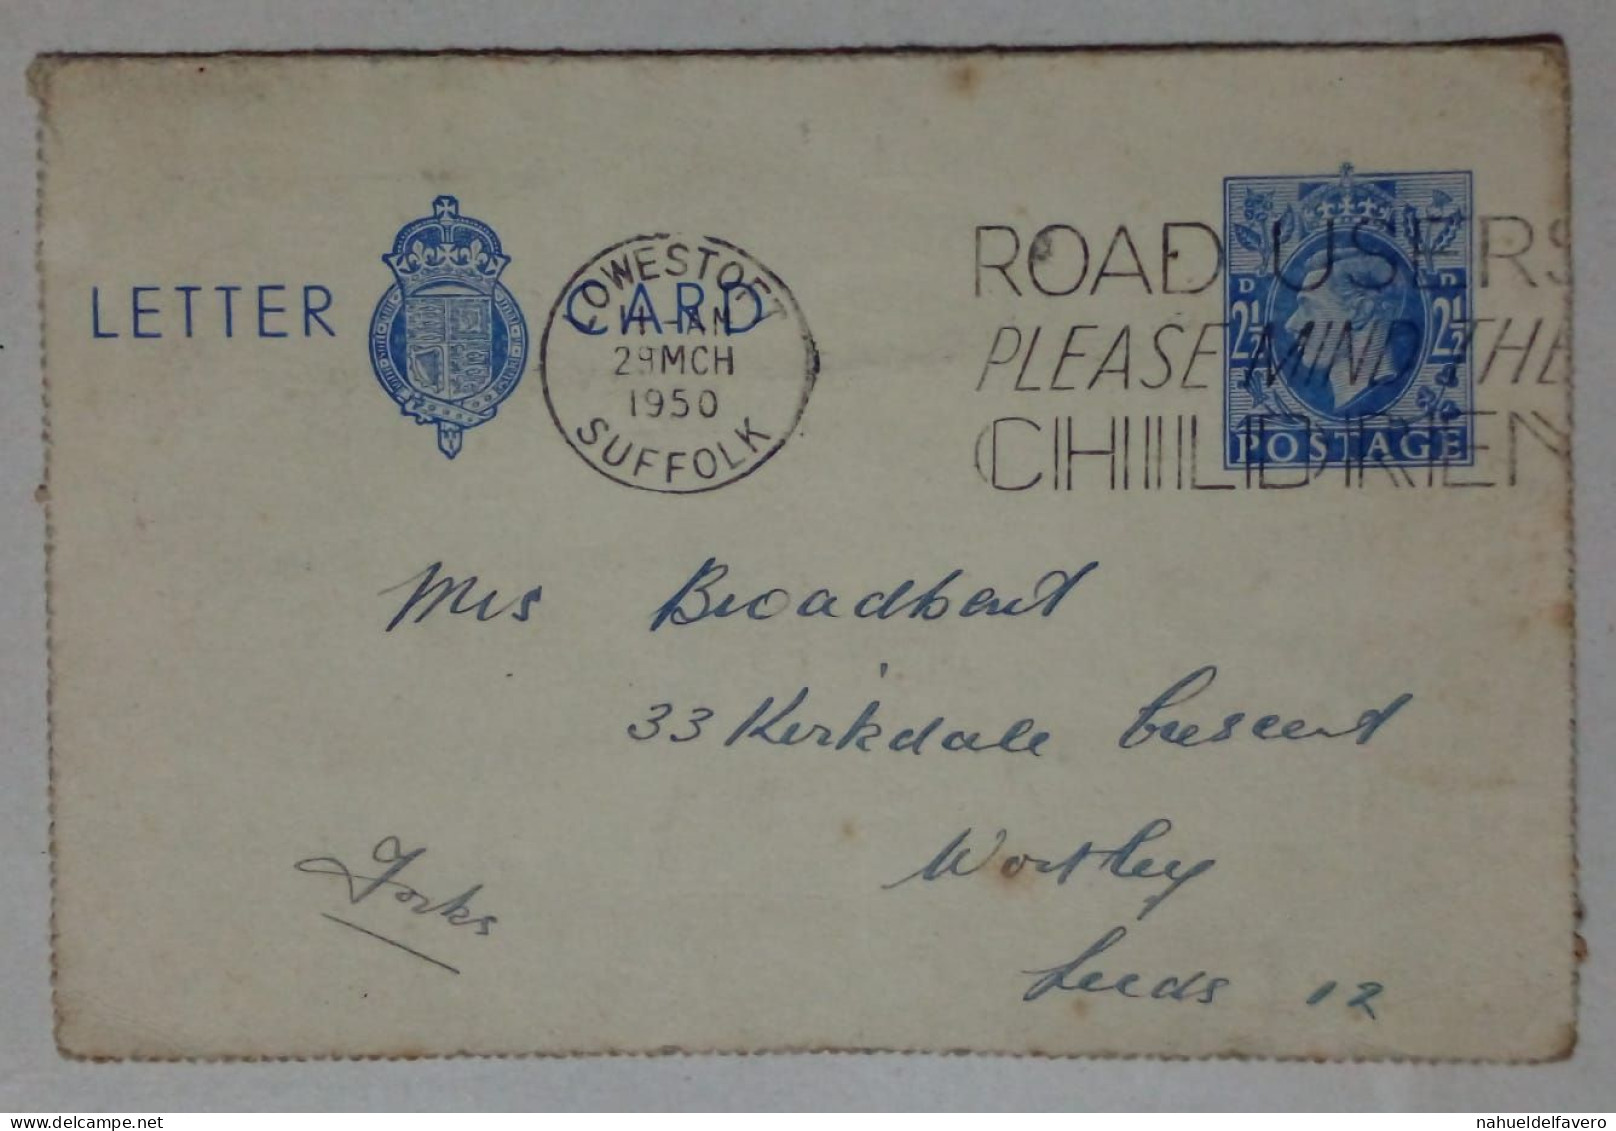 Grande-Bretagne - Carte-lettre Circulée (1950) - Oblitérés